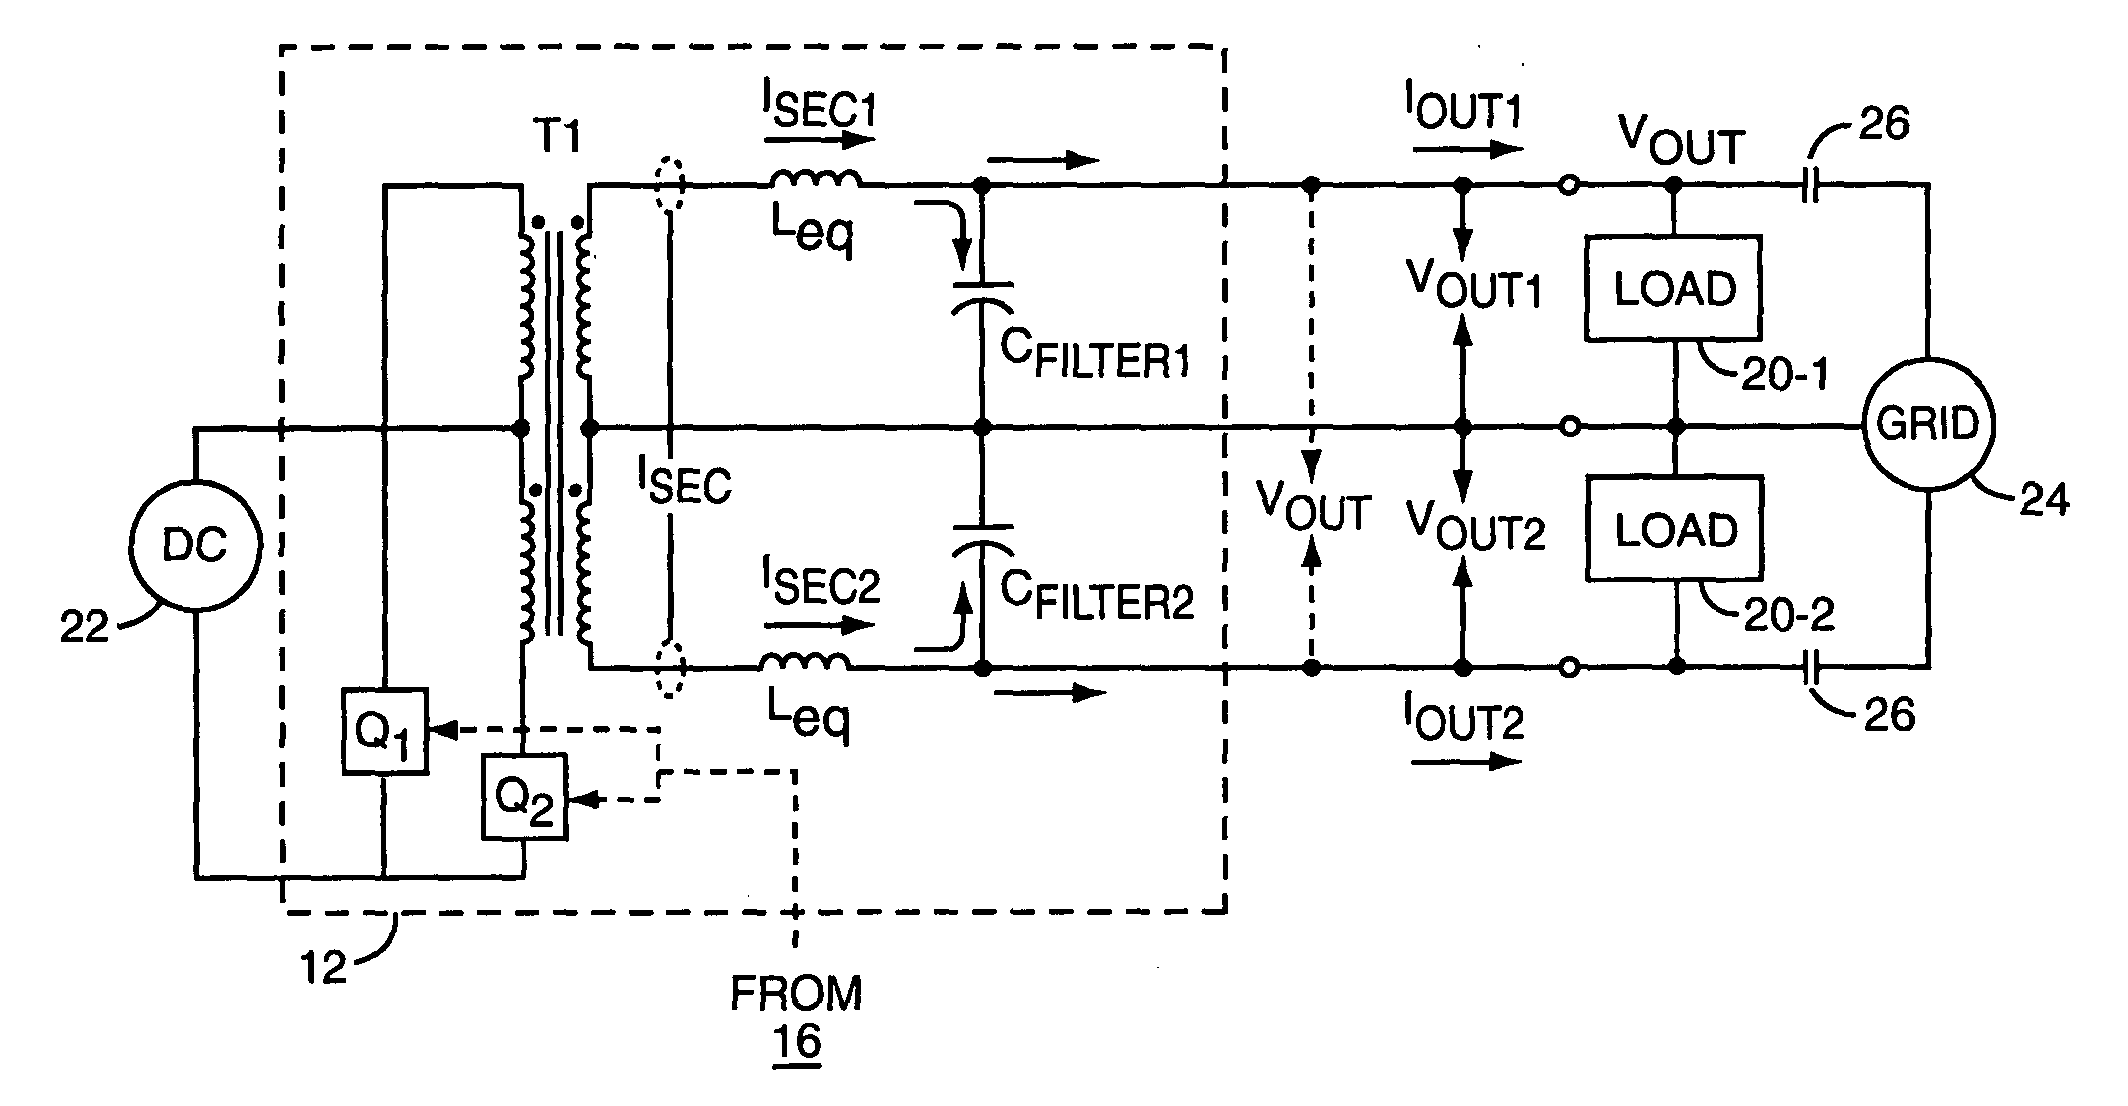 Power regulator for power inverter